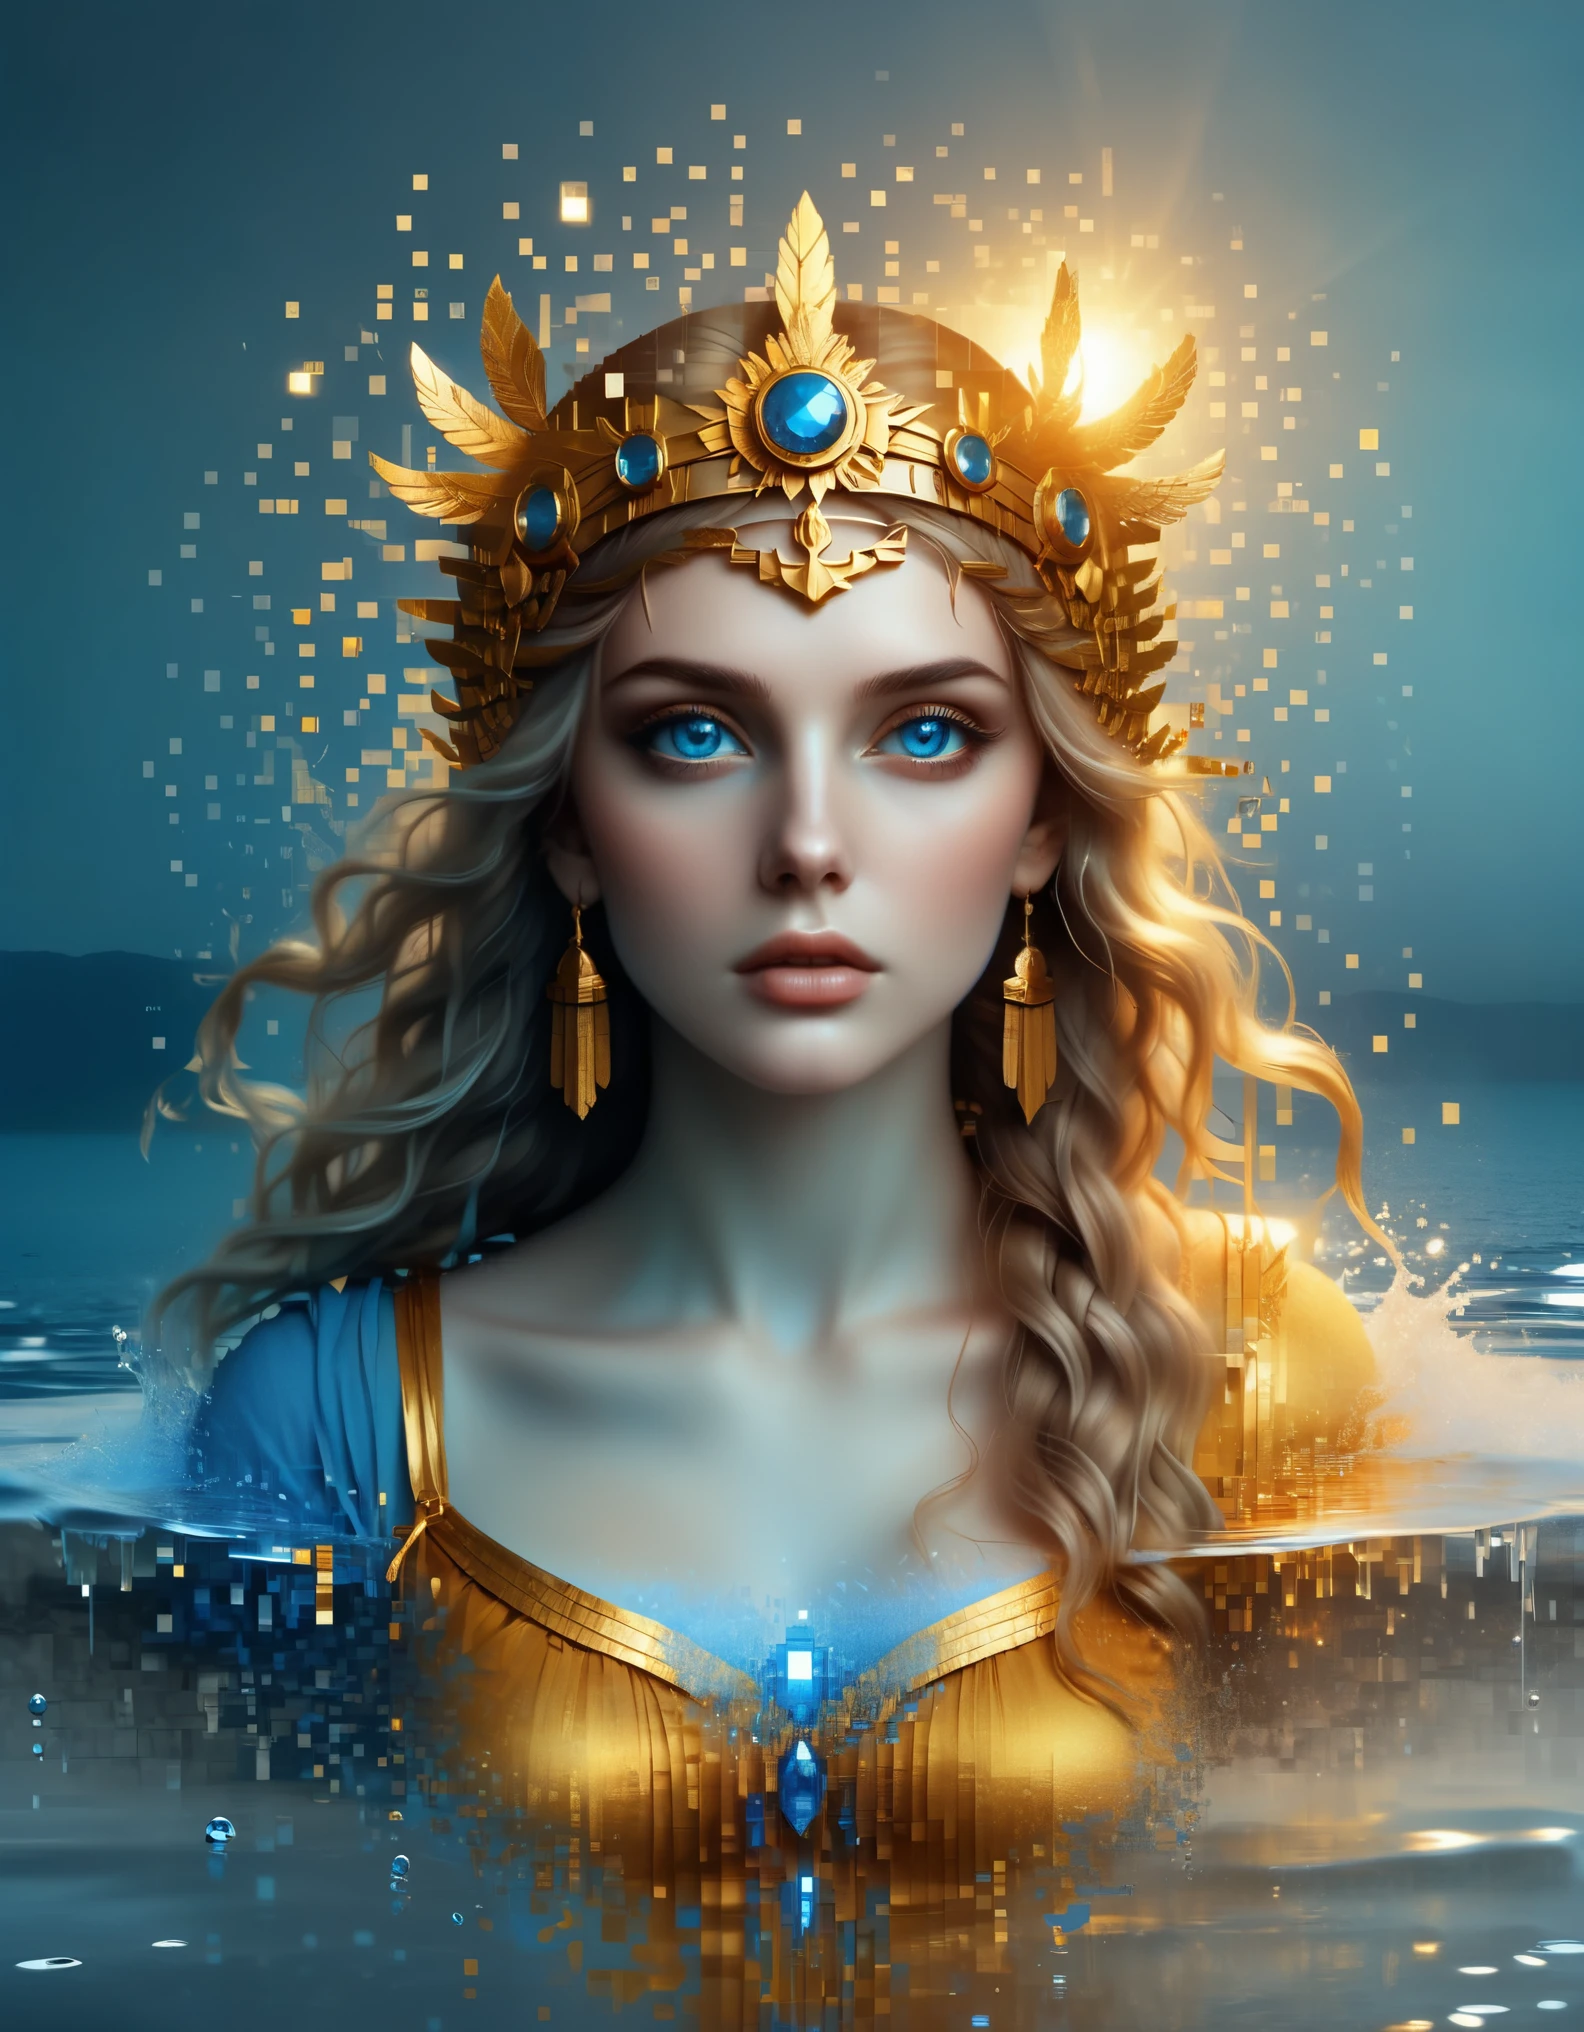 ドット絵，Caras Ionutのスタイルで, 美しいディテール， 美しいディテール，溶解したピクセルの青いグラデーションカラーの美しい女神アテナ，（全身），非常に美しい青い目，徐々に分解する，黄金の太陽が輝く，水面の部分的な反射，